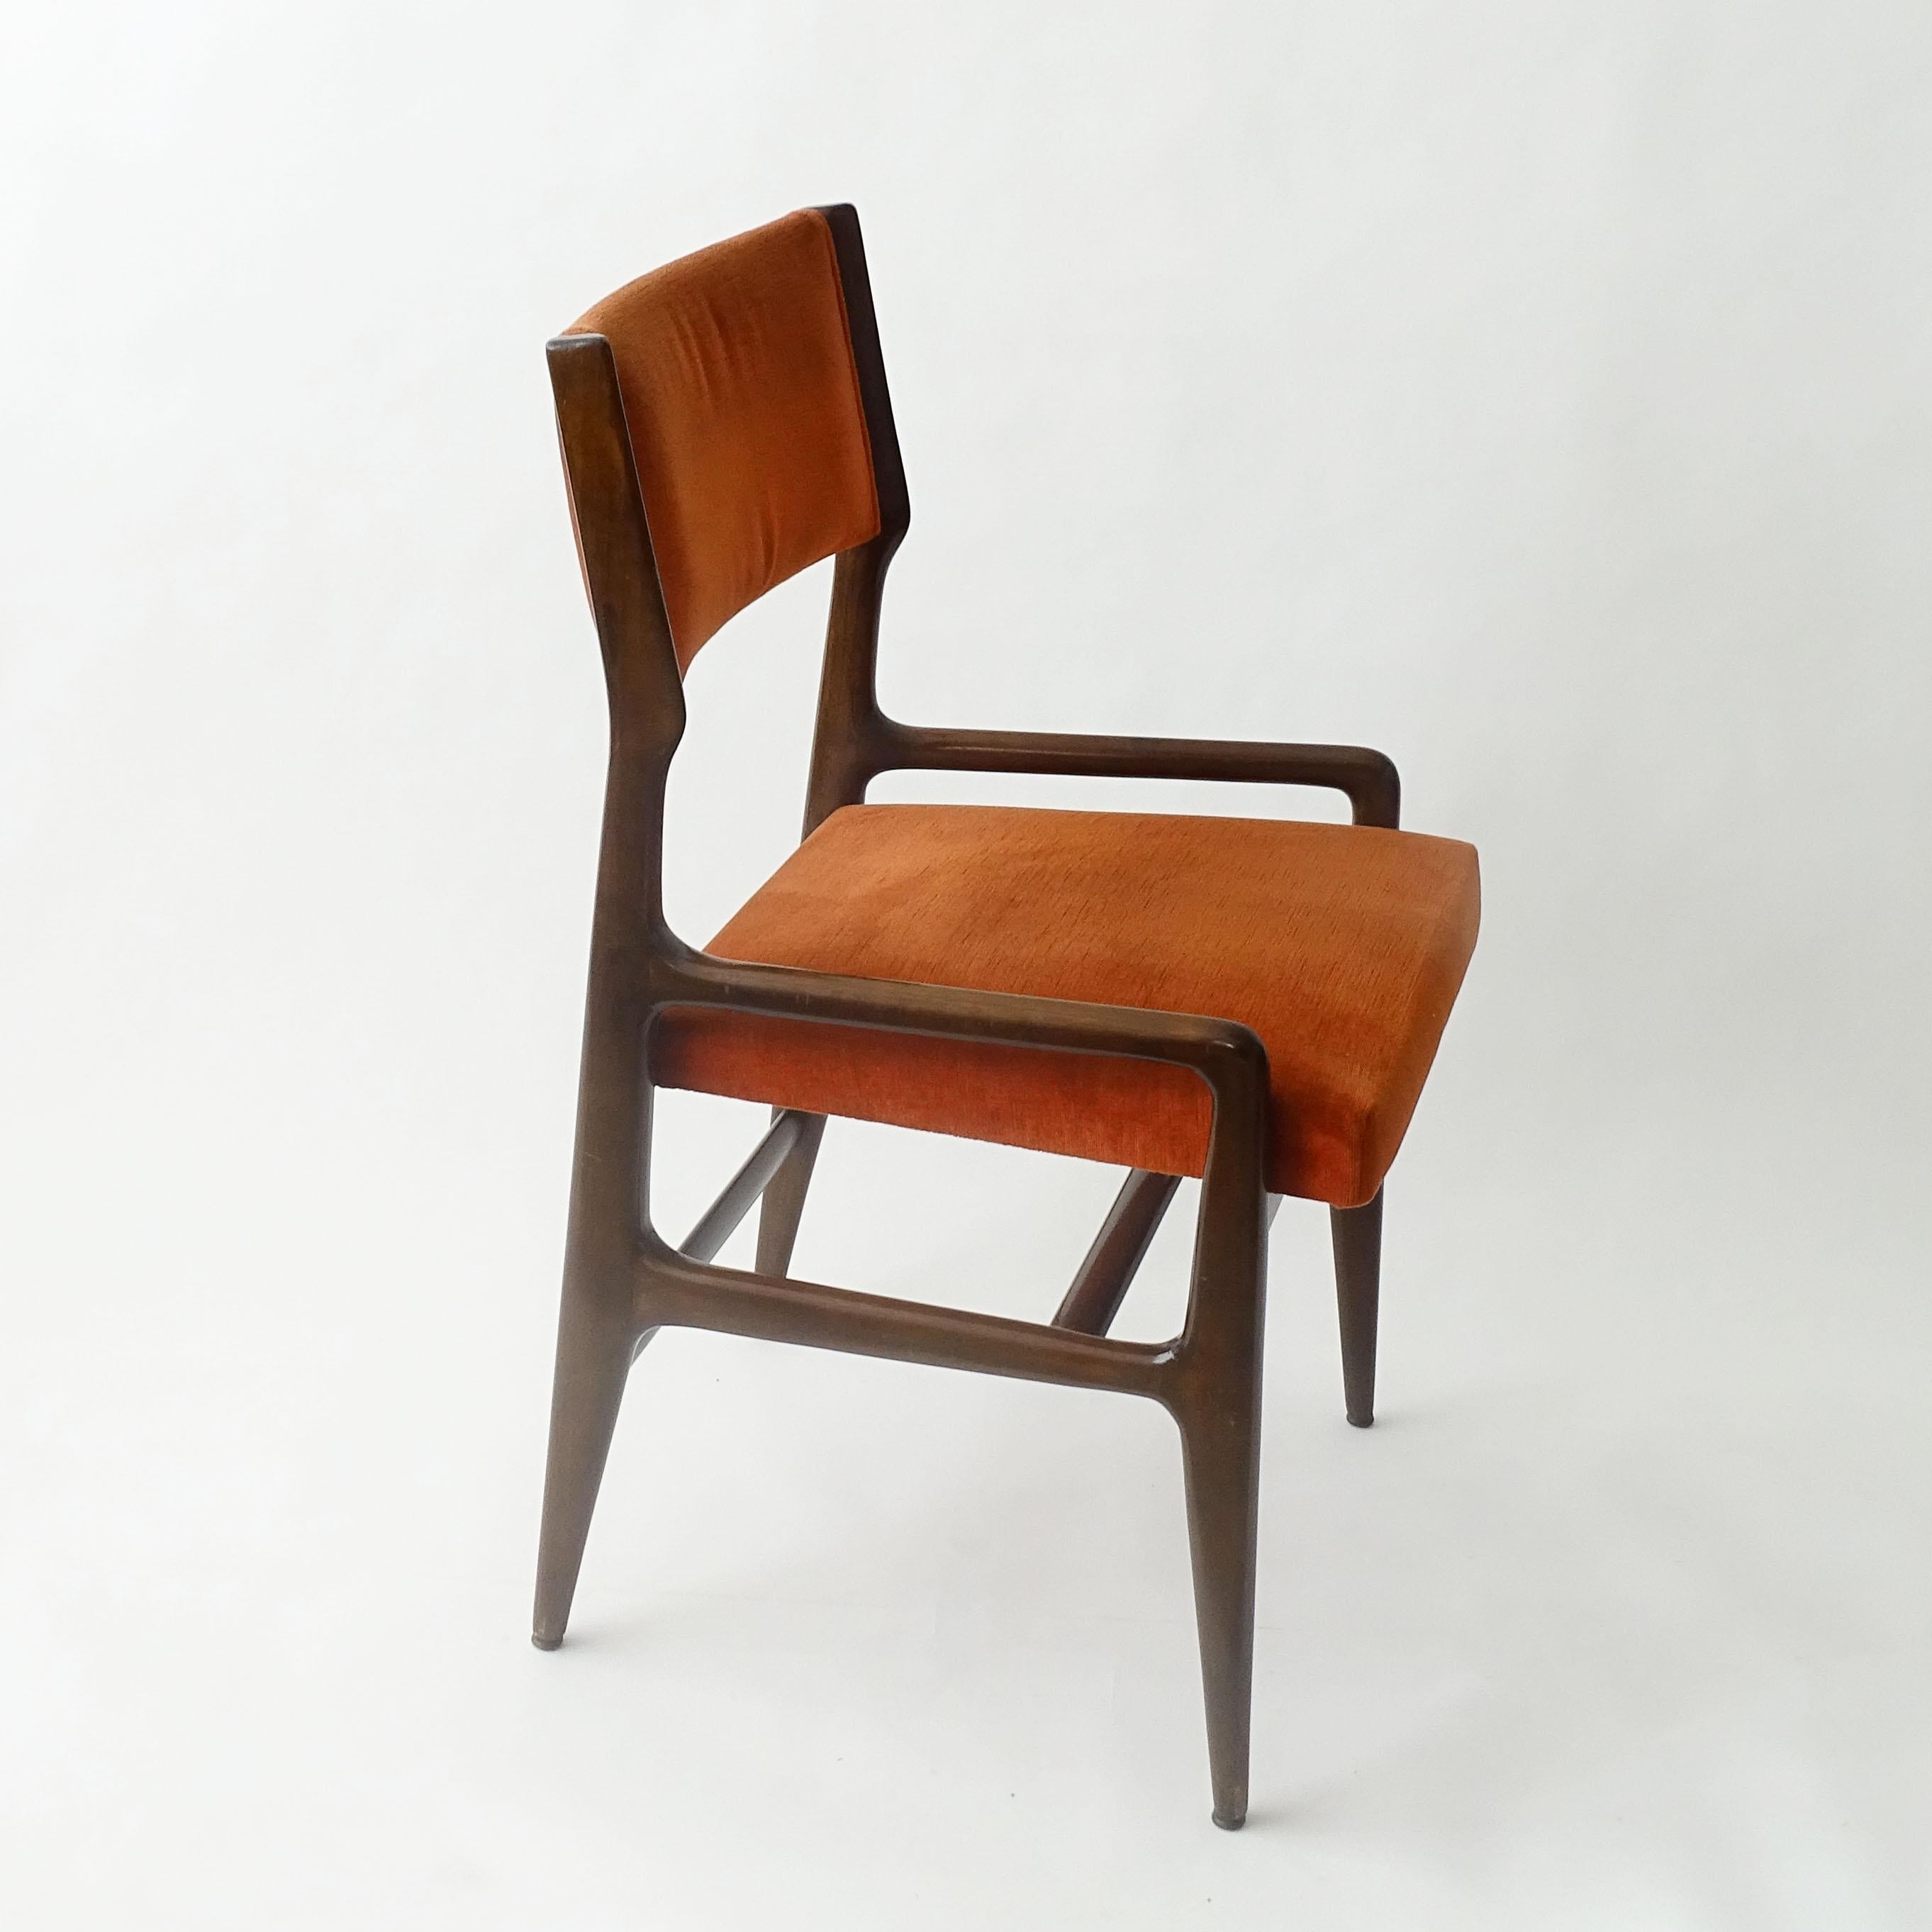 Single Gio Ponti Model: 676 chair for Cassina, Italy 1950s
Original velvet upholstery.